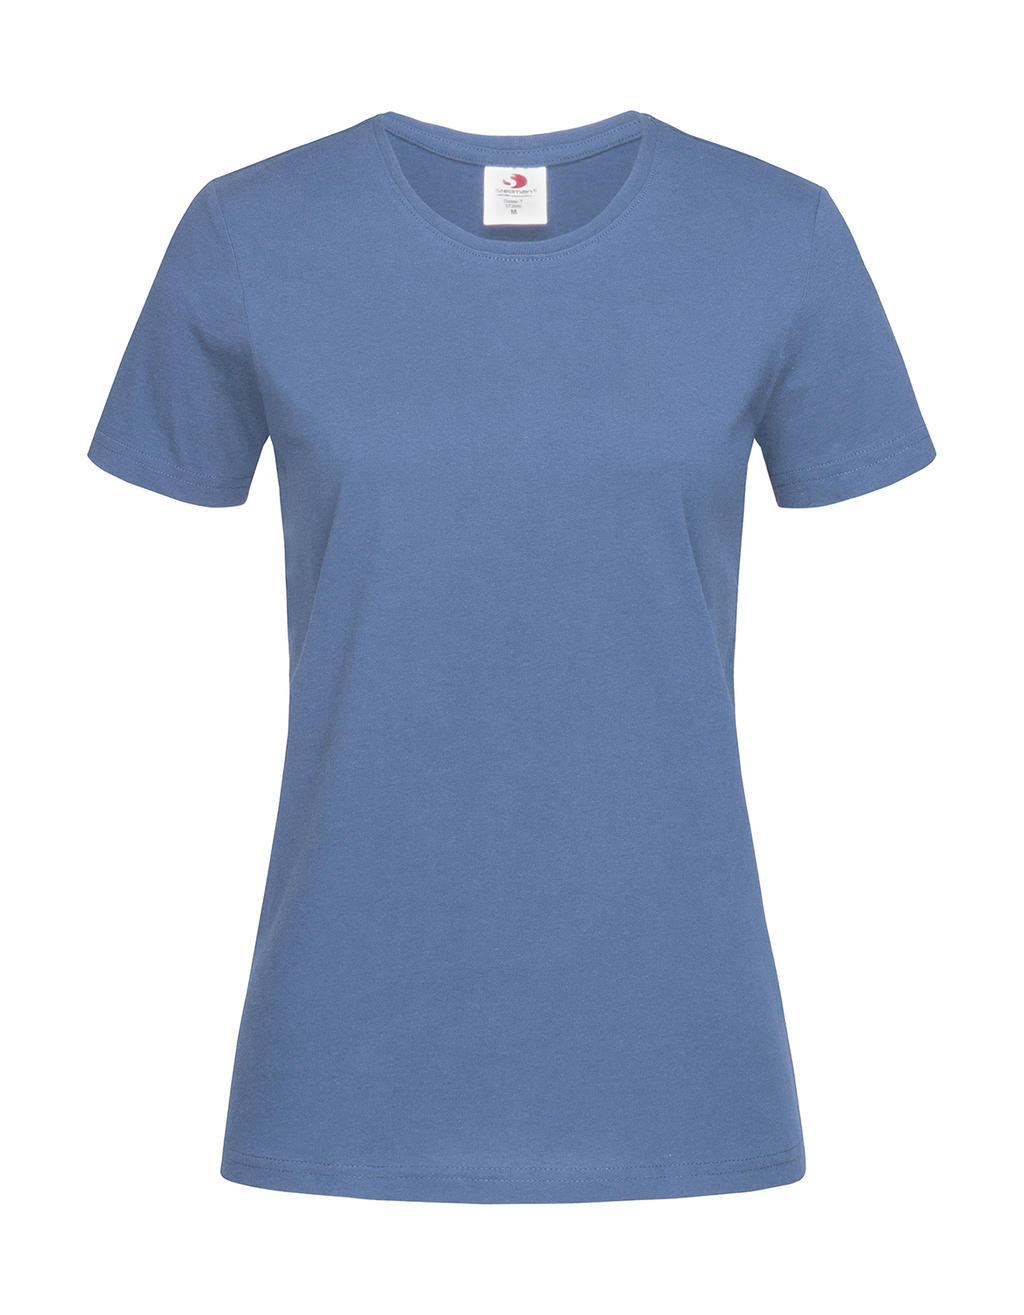 Tričko dámské Stedman Fitted s kulatým výstřihem - středně modré, L